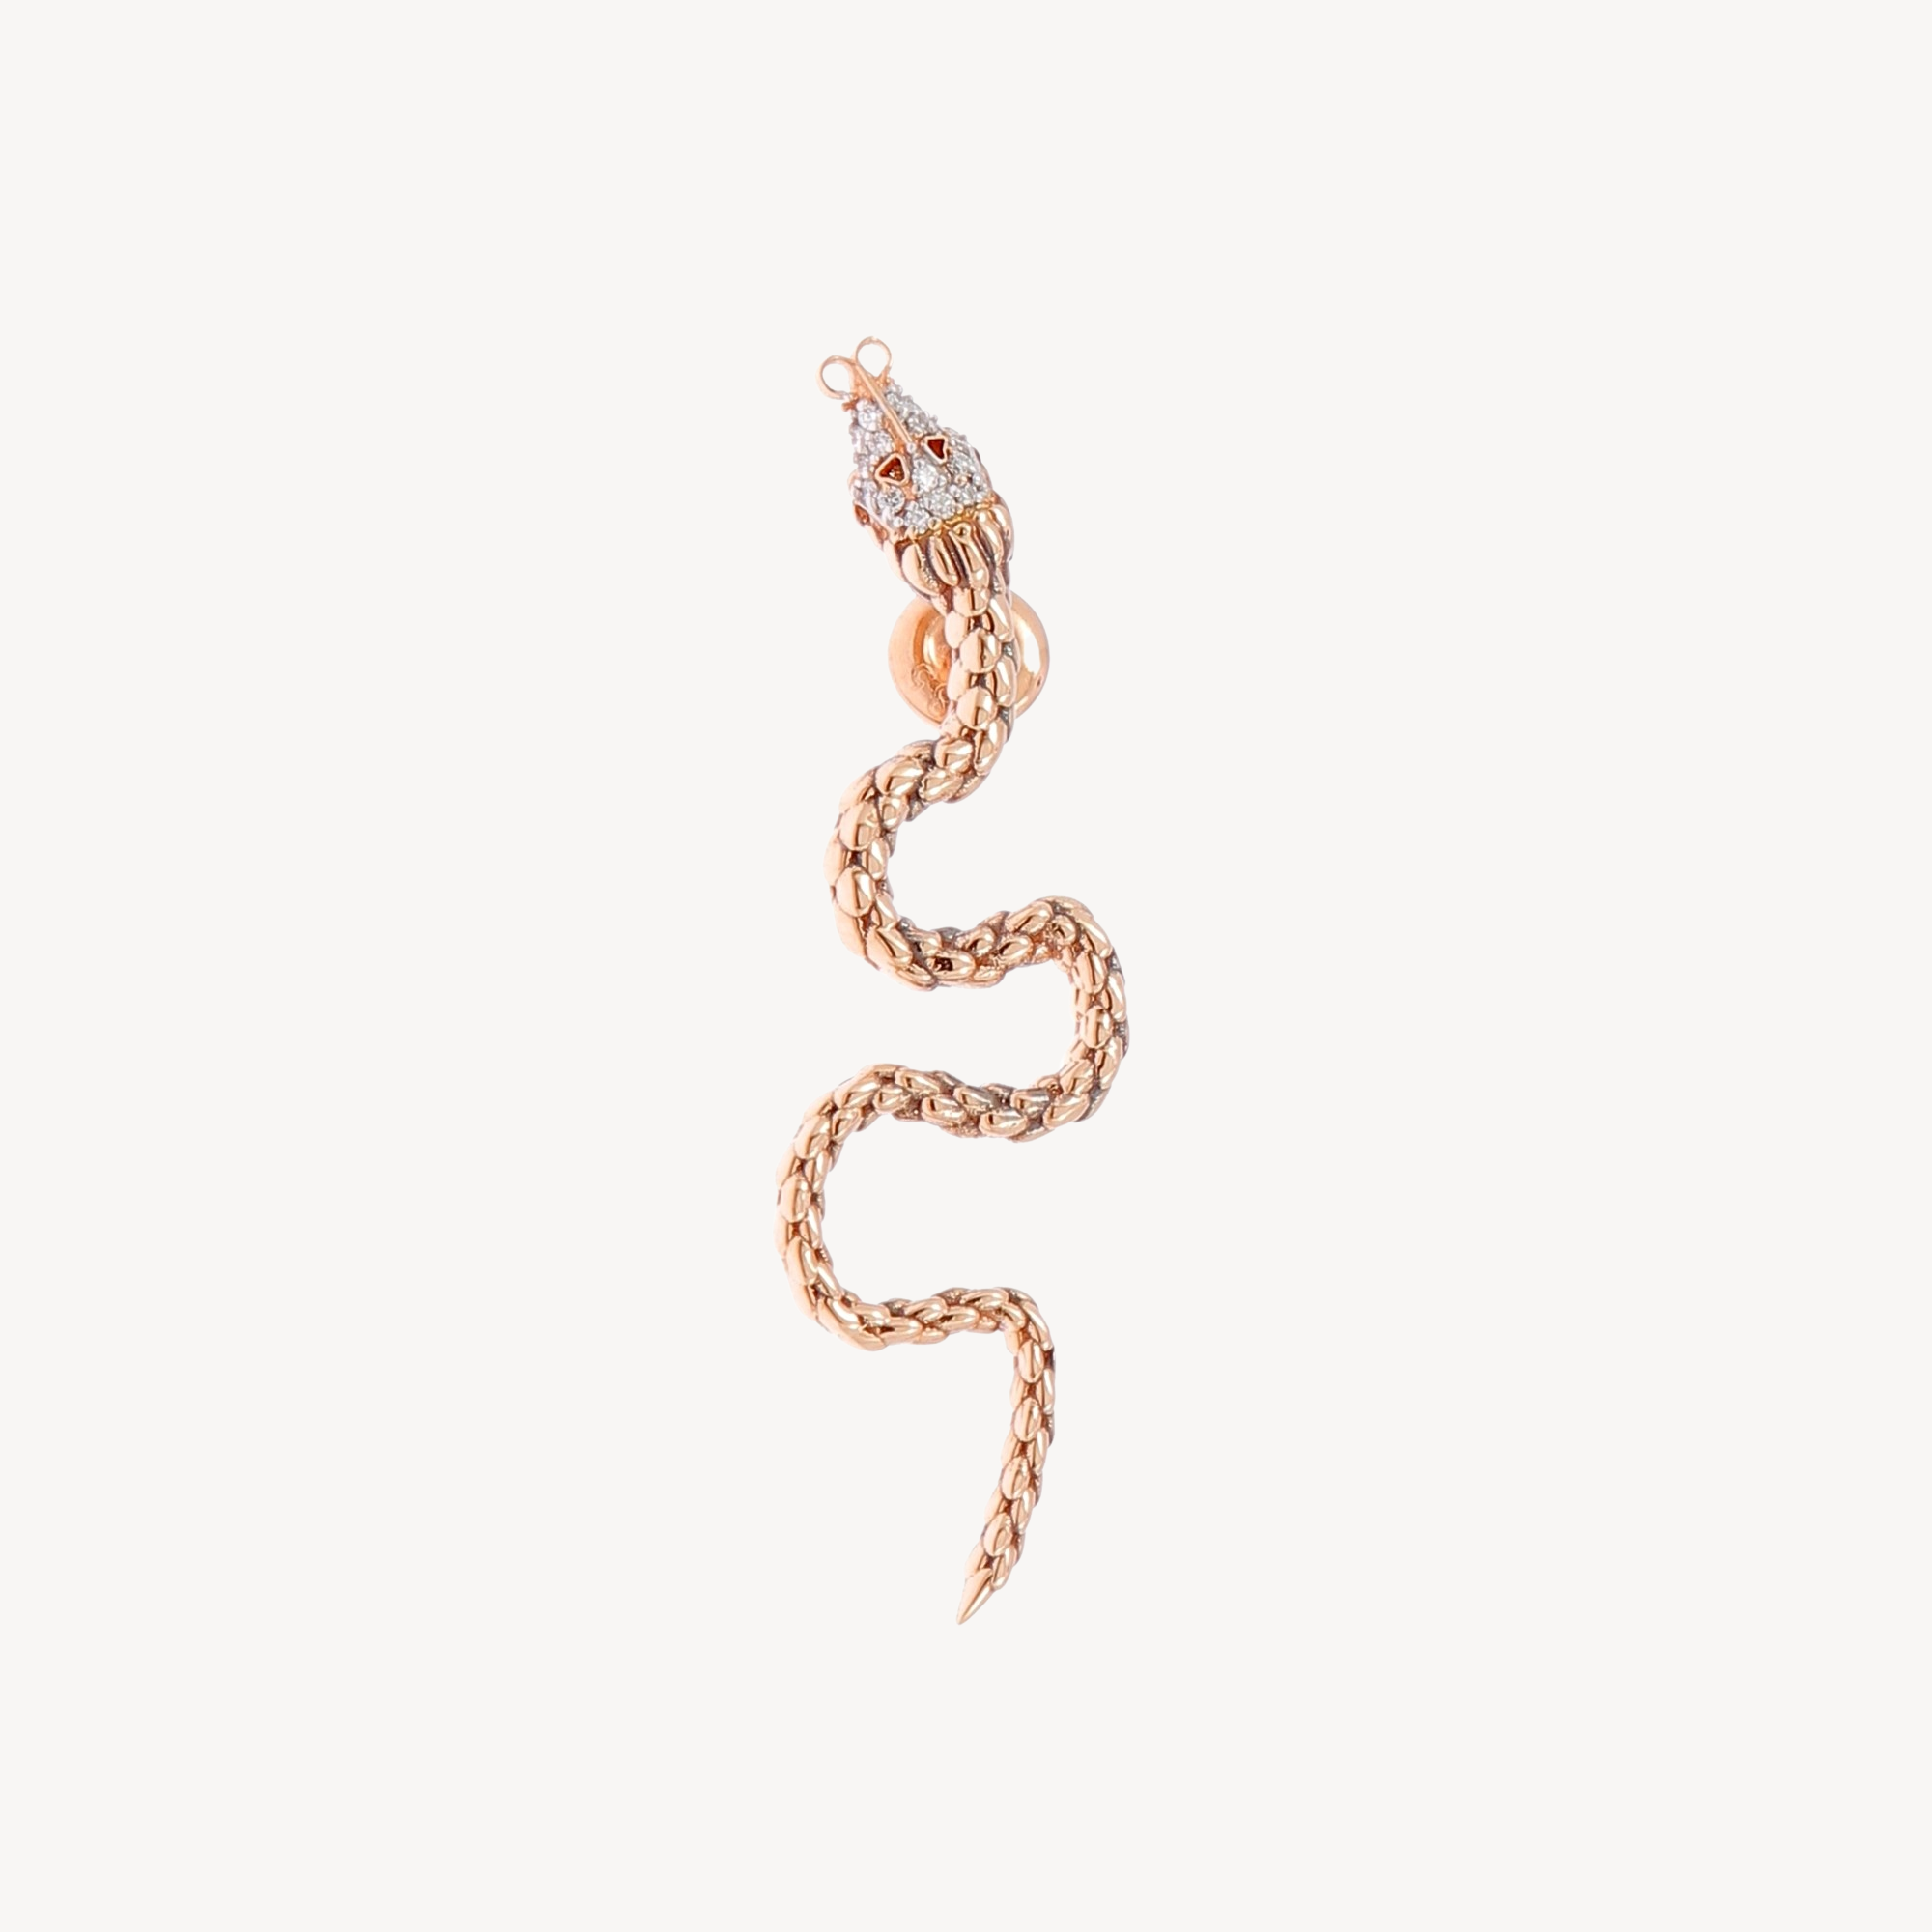 Curved snake earring